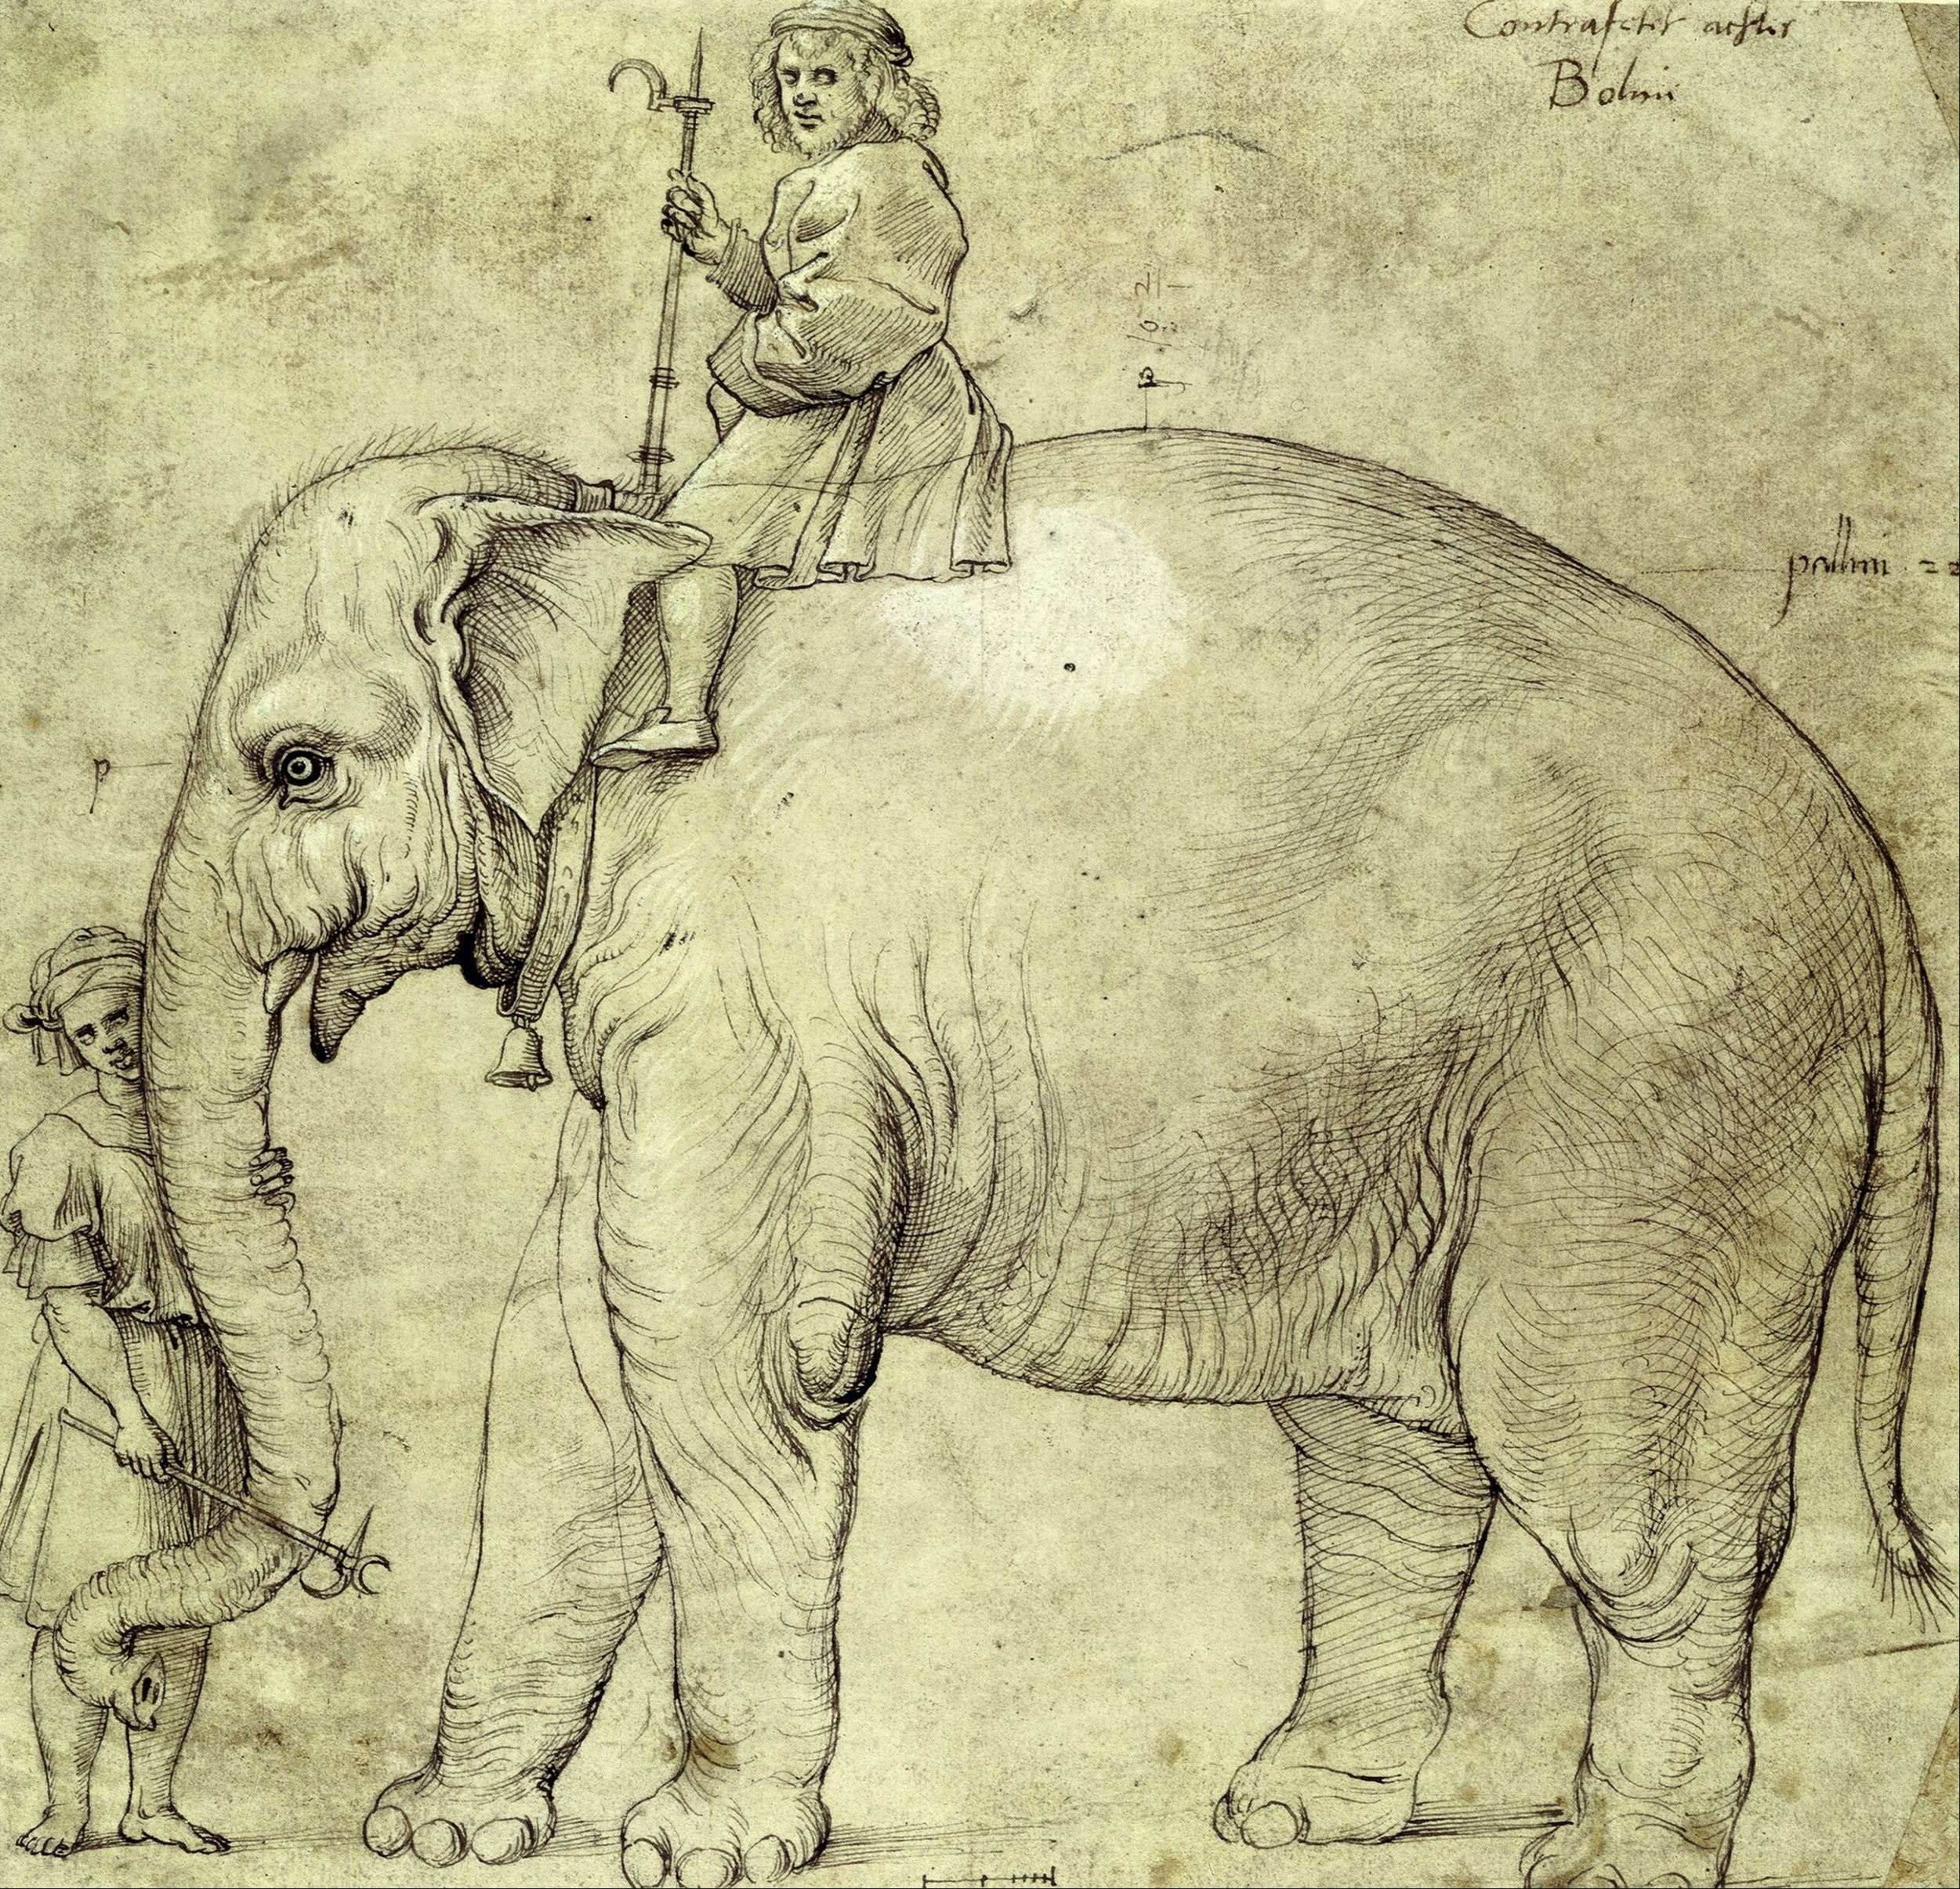 Der Elefant Hanno by Die Schule von Raffael Sanzio - 1516 - 28,5 x 27,9 cm Kupferstichkabinett, Nationalmuseum Berlin